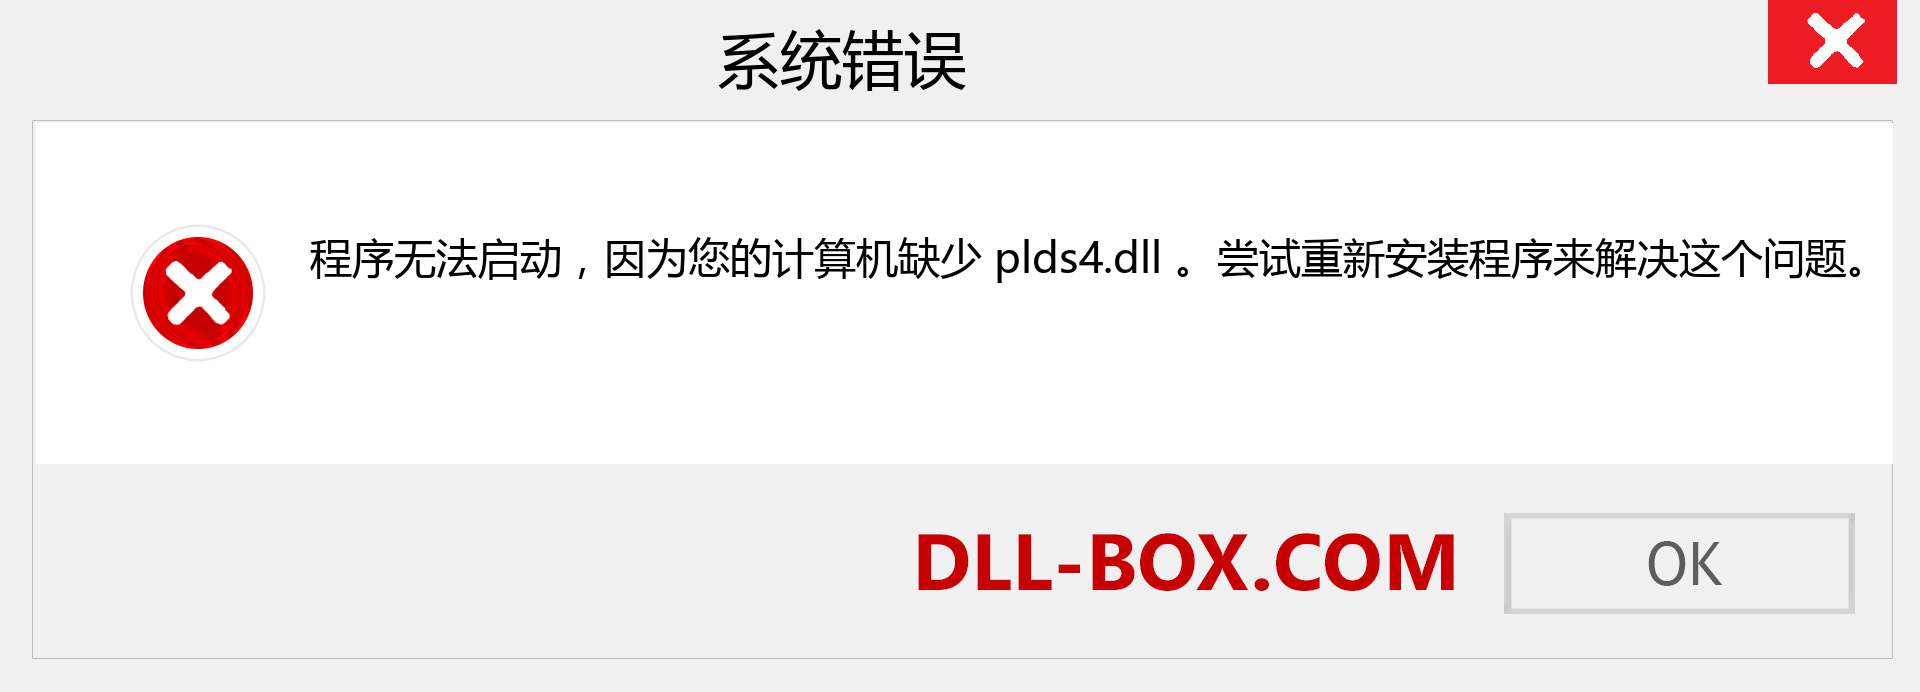 plds4.dll 文件丢失？。 适用于 Windows 7、8、10 的下载 - 修复 Windows、照片、图像上的 plds4 dll 丢失错误